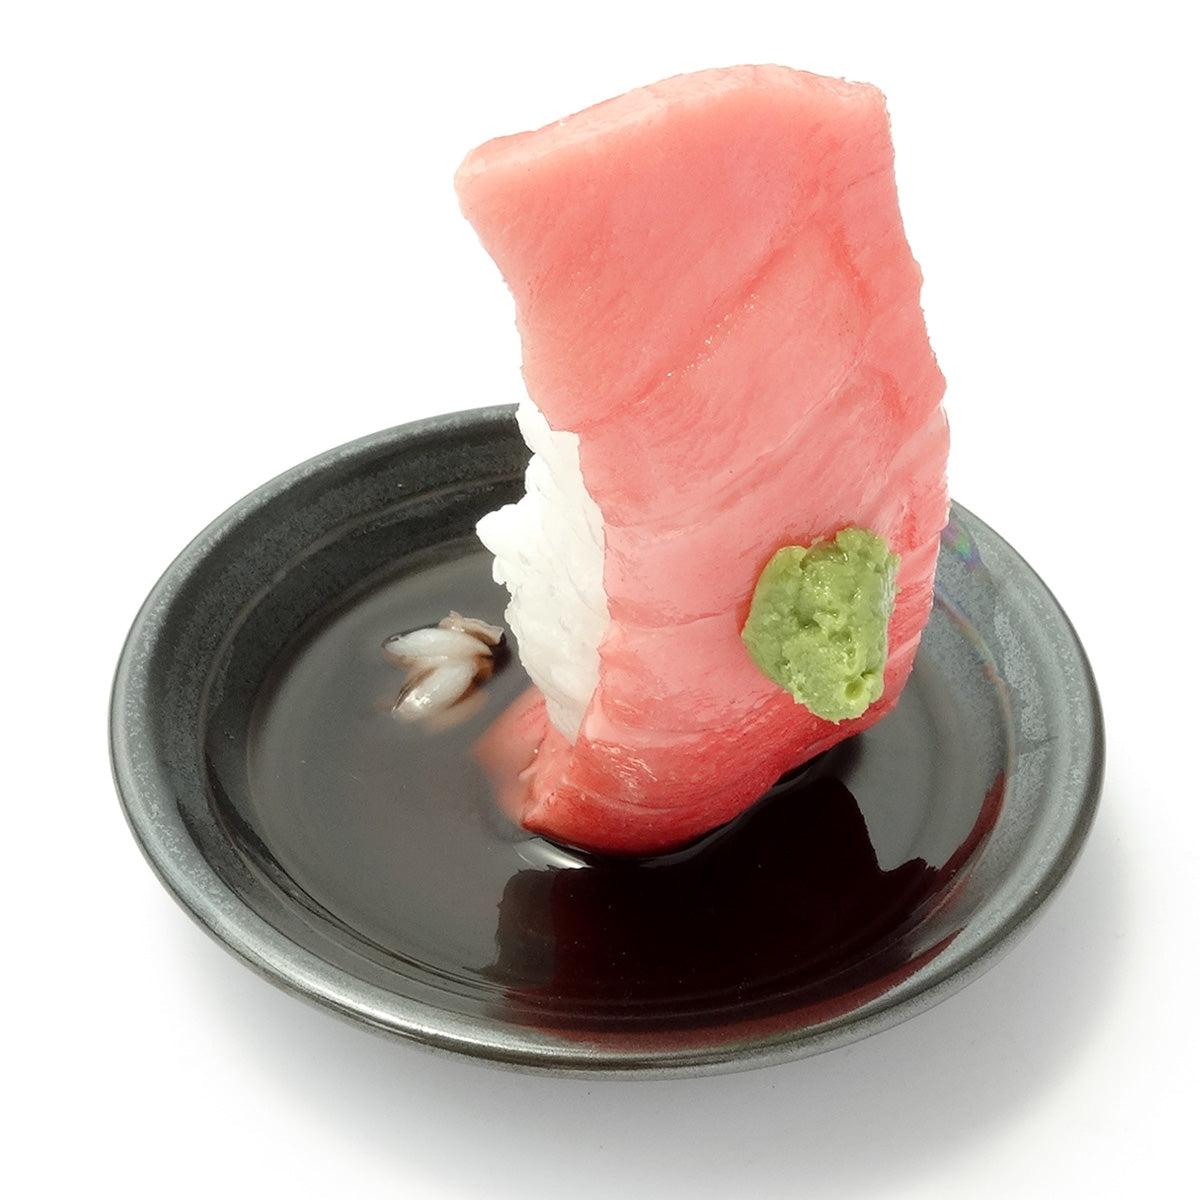 これは元祖食品サンプル屋の「つまみ寿司 中トロ」の商品画像です。